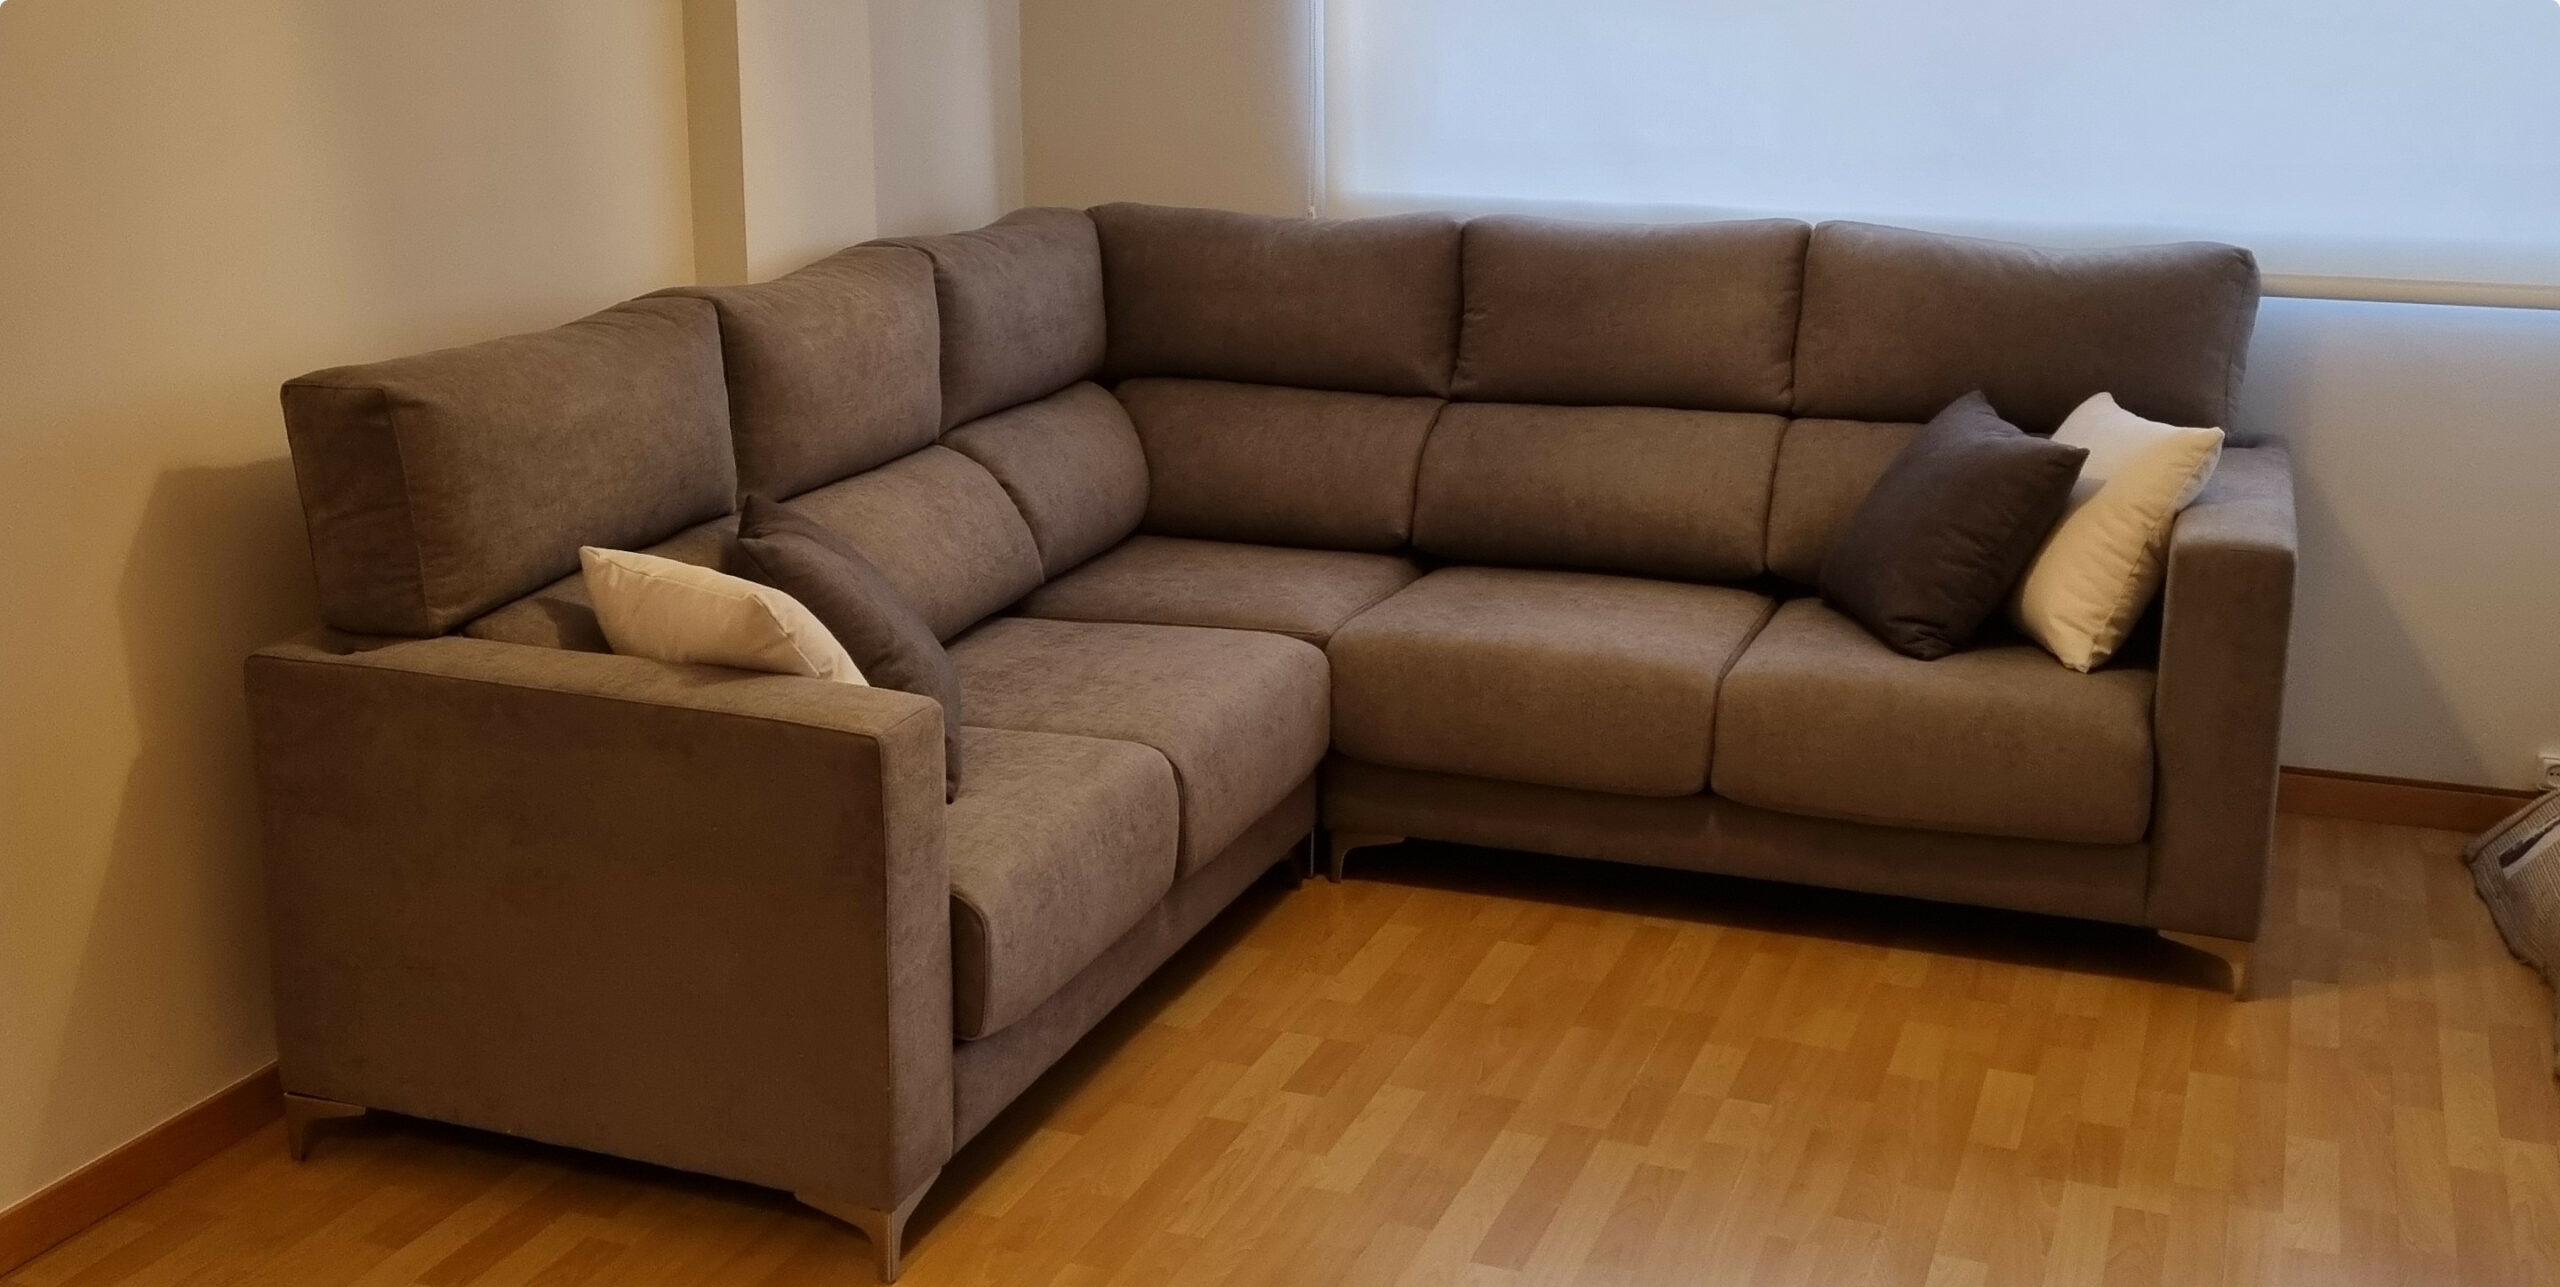 Mejor sofá calidad precio. asiento deslizante, respaldo alto  reclinable,arcón